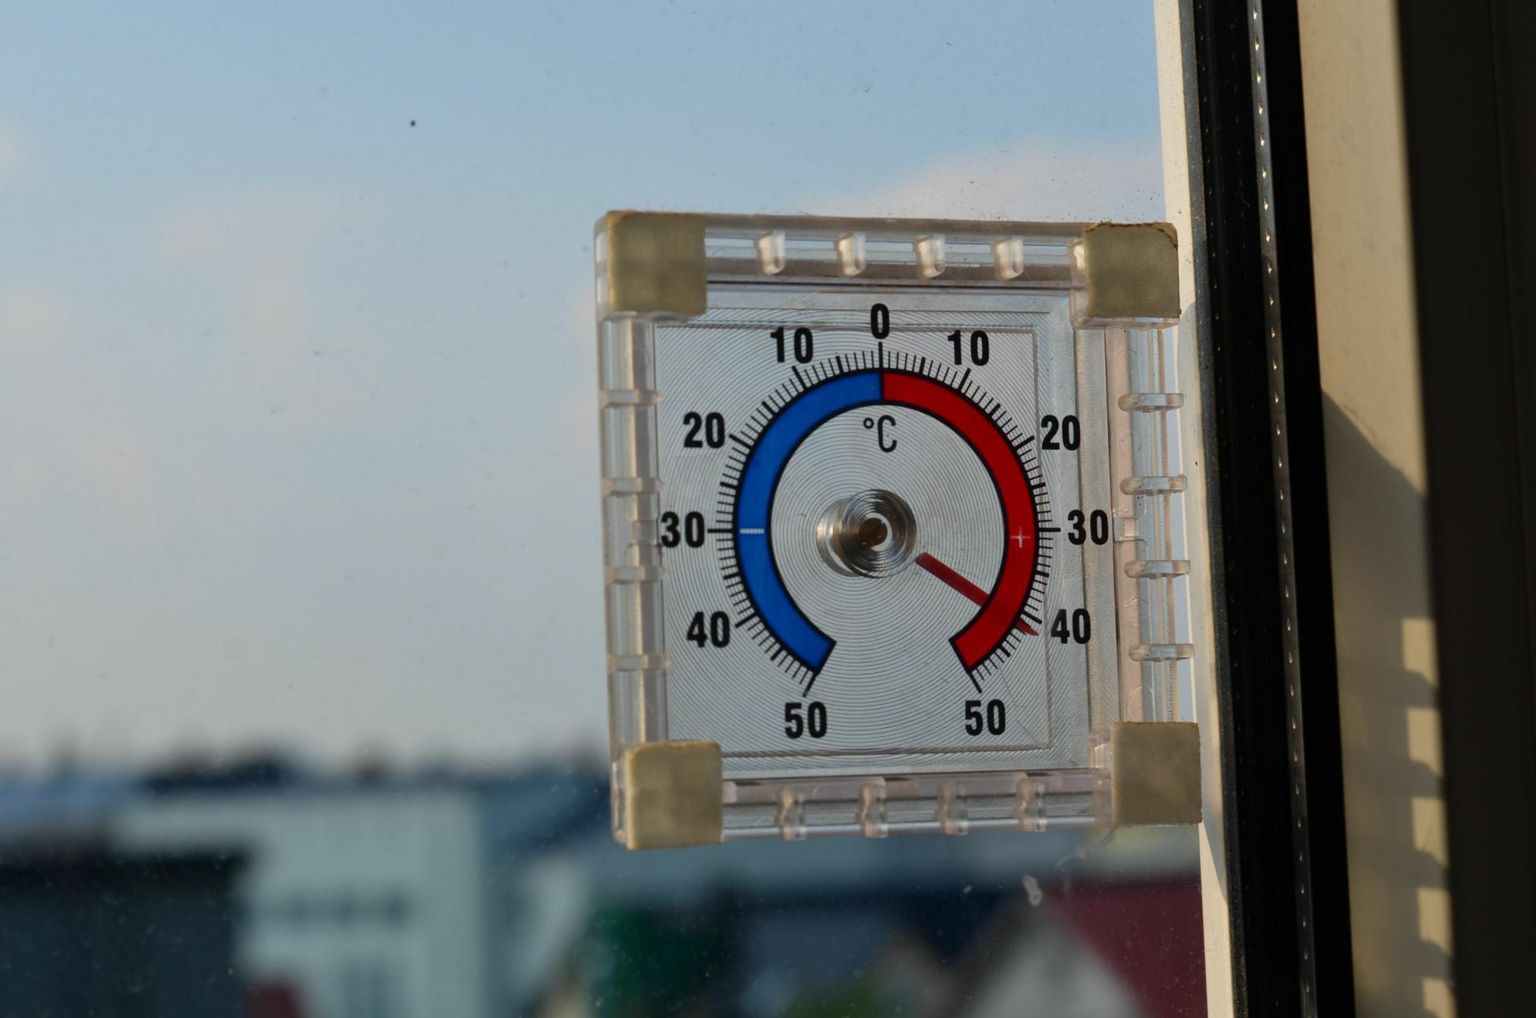 Kuigi päikese käes võib termomeetri näit küüninda ka üle 40 soojakraadi, on Eesti ametlik rekord 35,6 °C. 